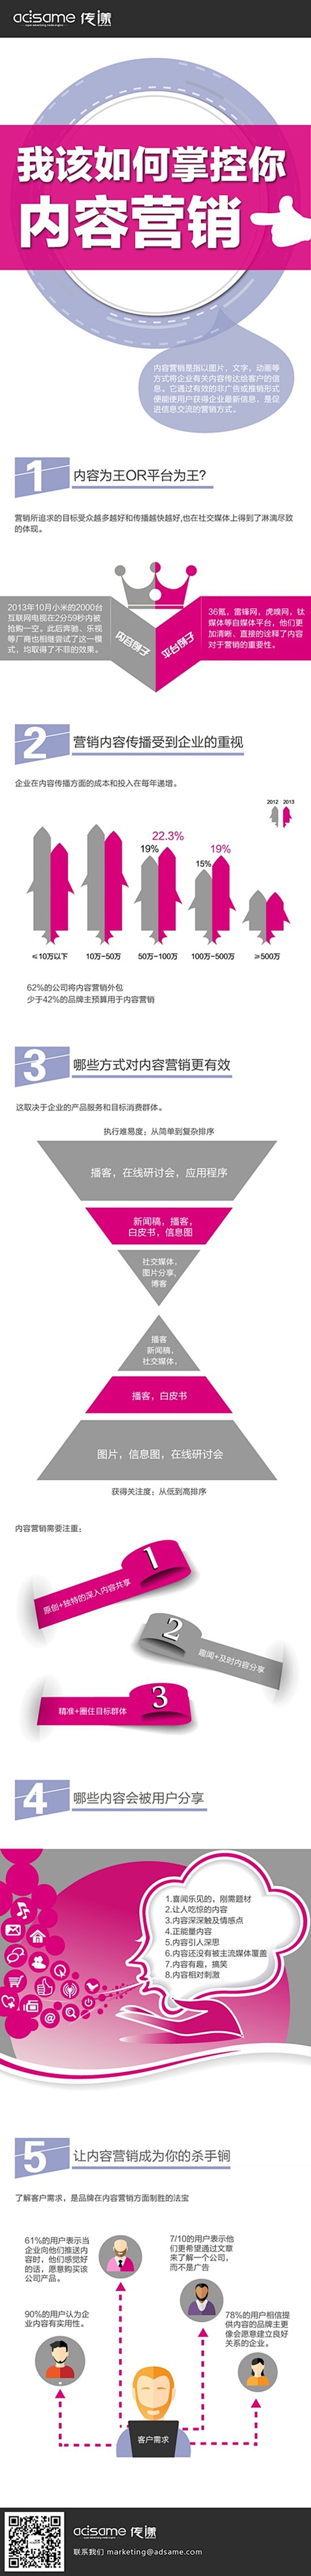 【营销信息图】如何掌控内容营销_中国电子...